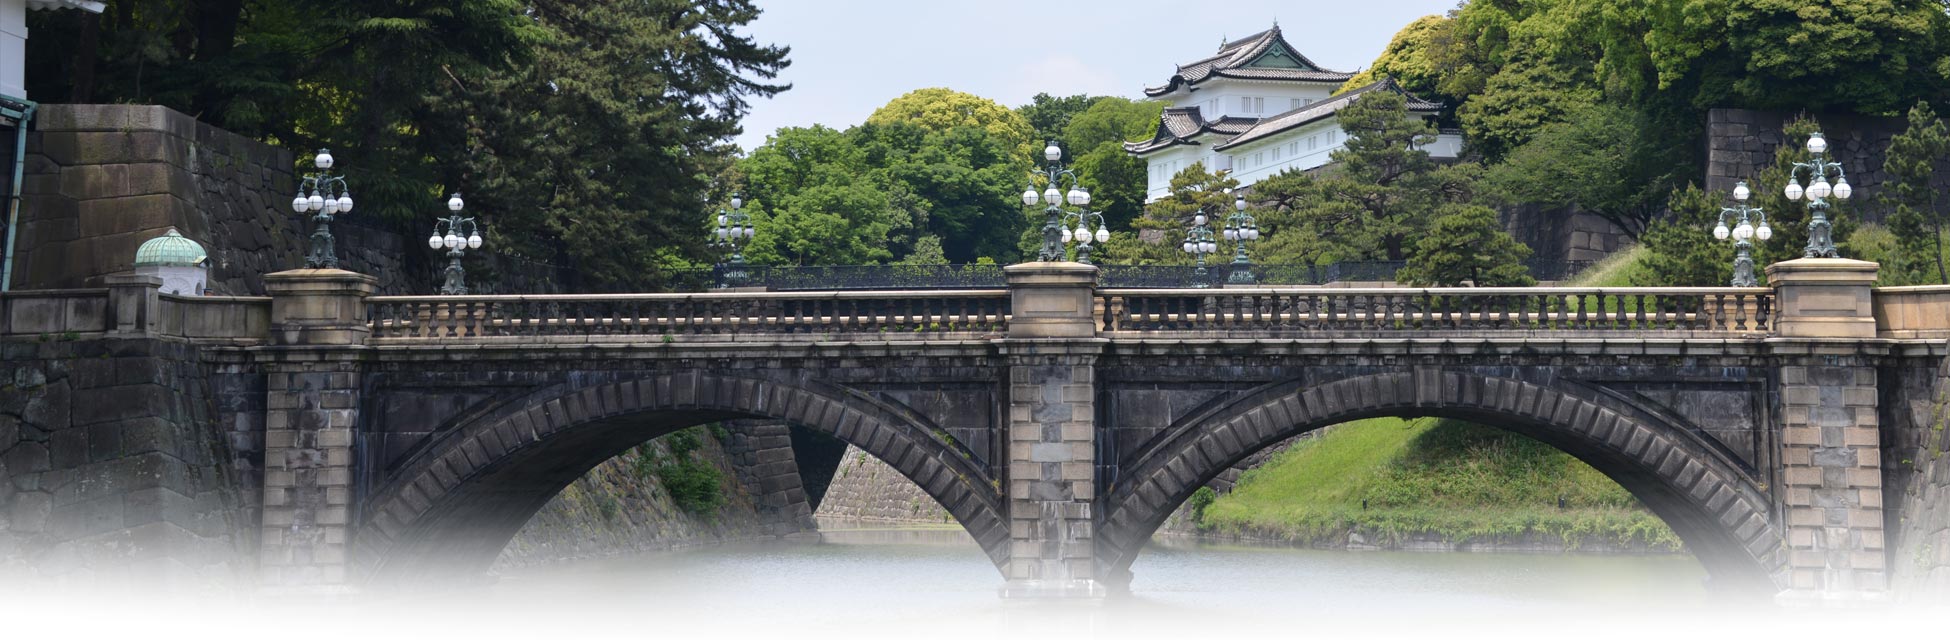 japan-tokio-tokyo-keizerlijk-paleis.jpg